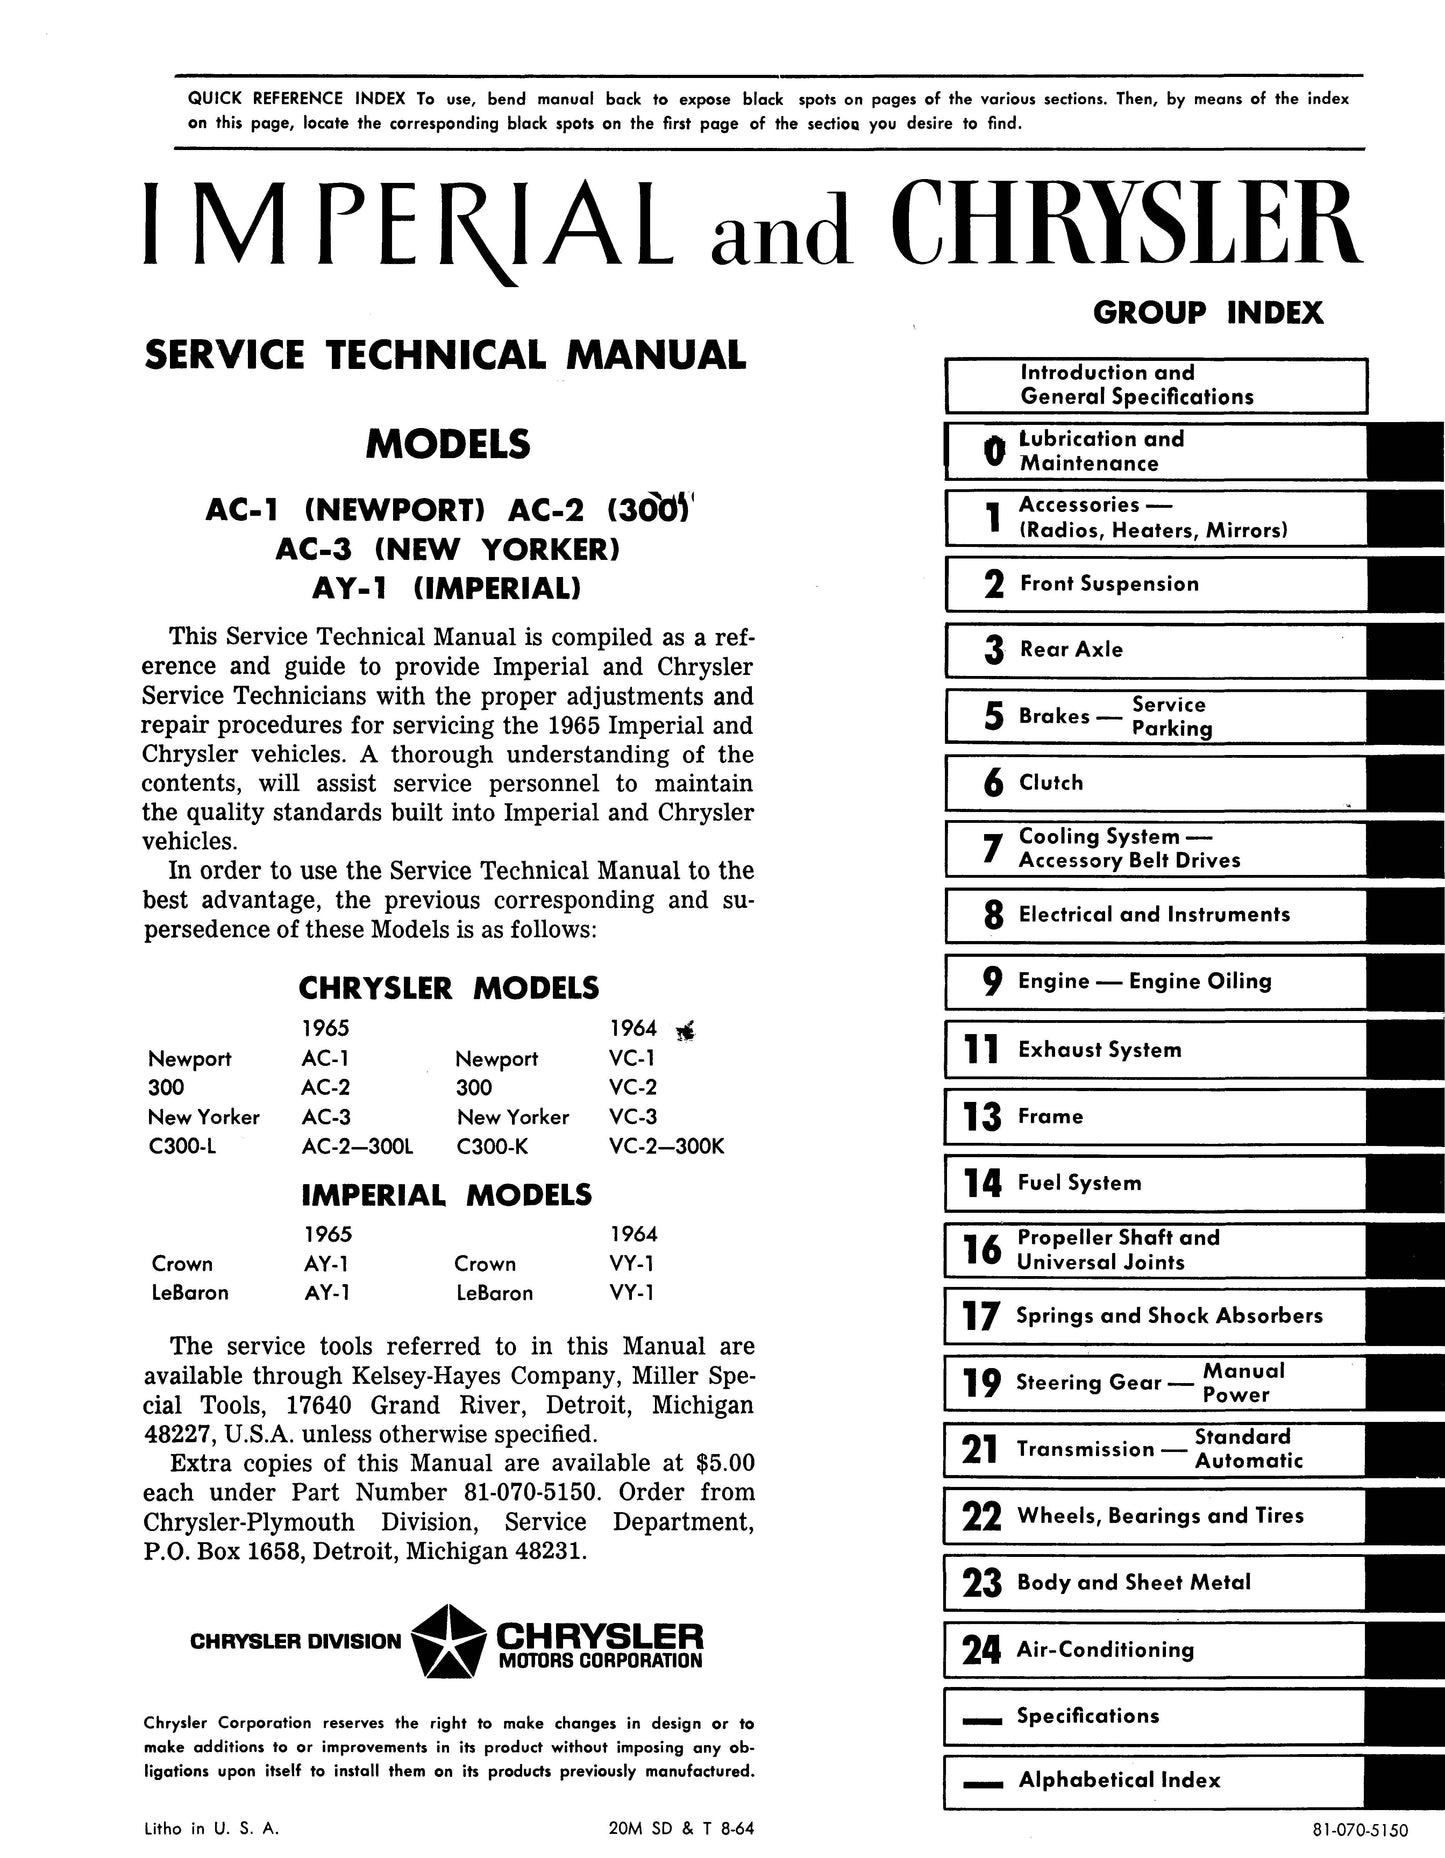 1965 Chrysler Shop Manual - All Models